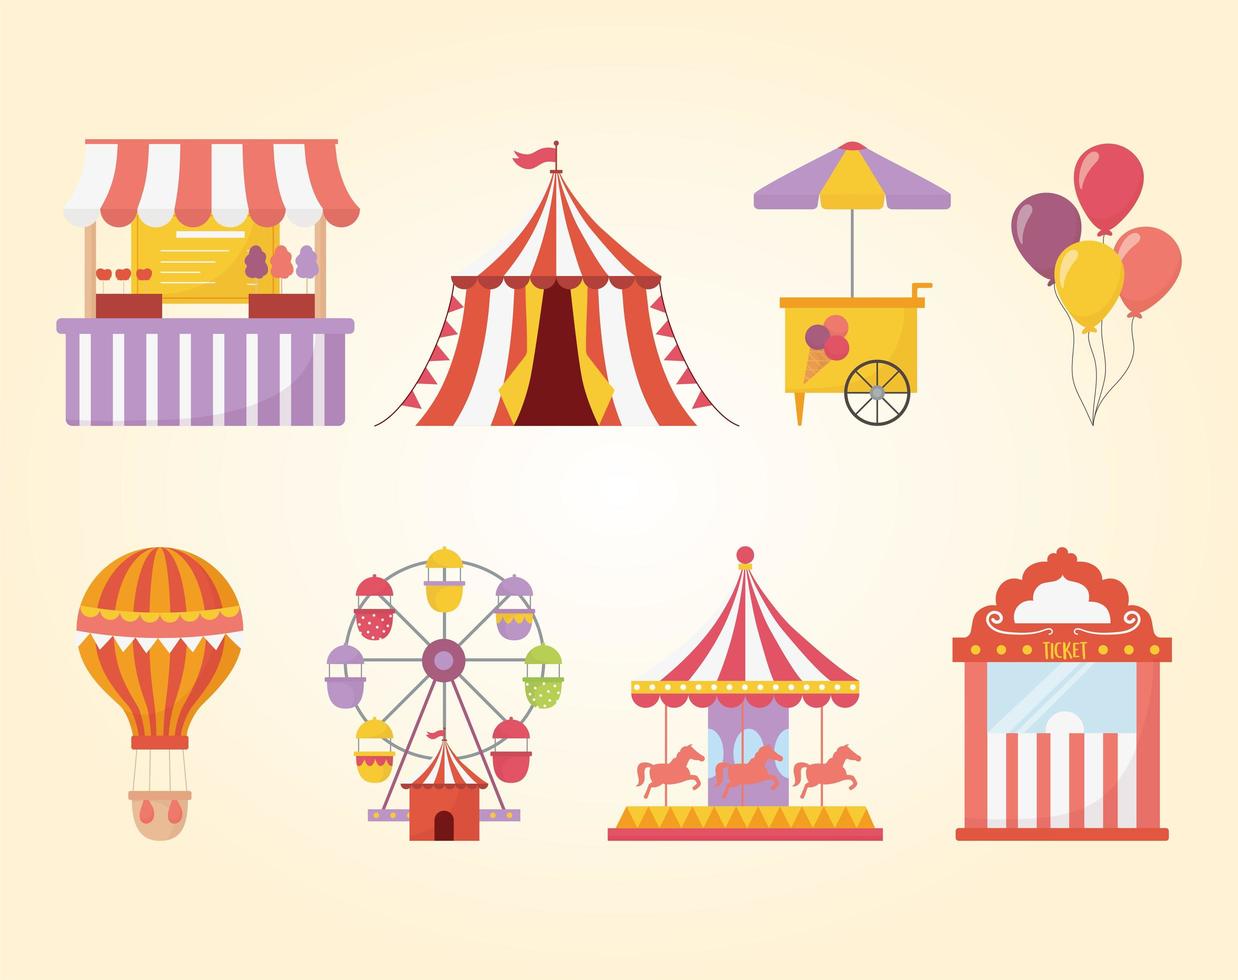 fête foraine carnaval des loisirs tente carrousel nourriture crème glacée montgolfière vecteur